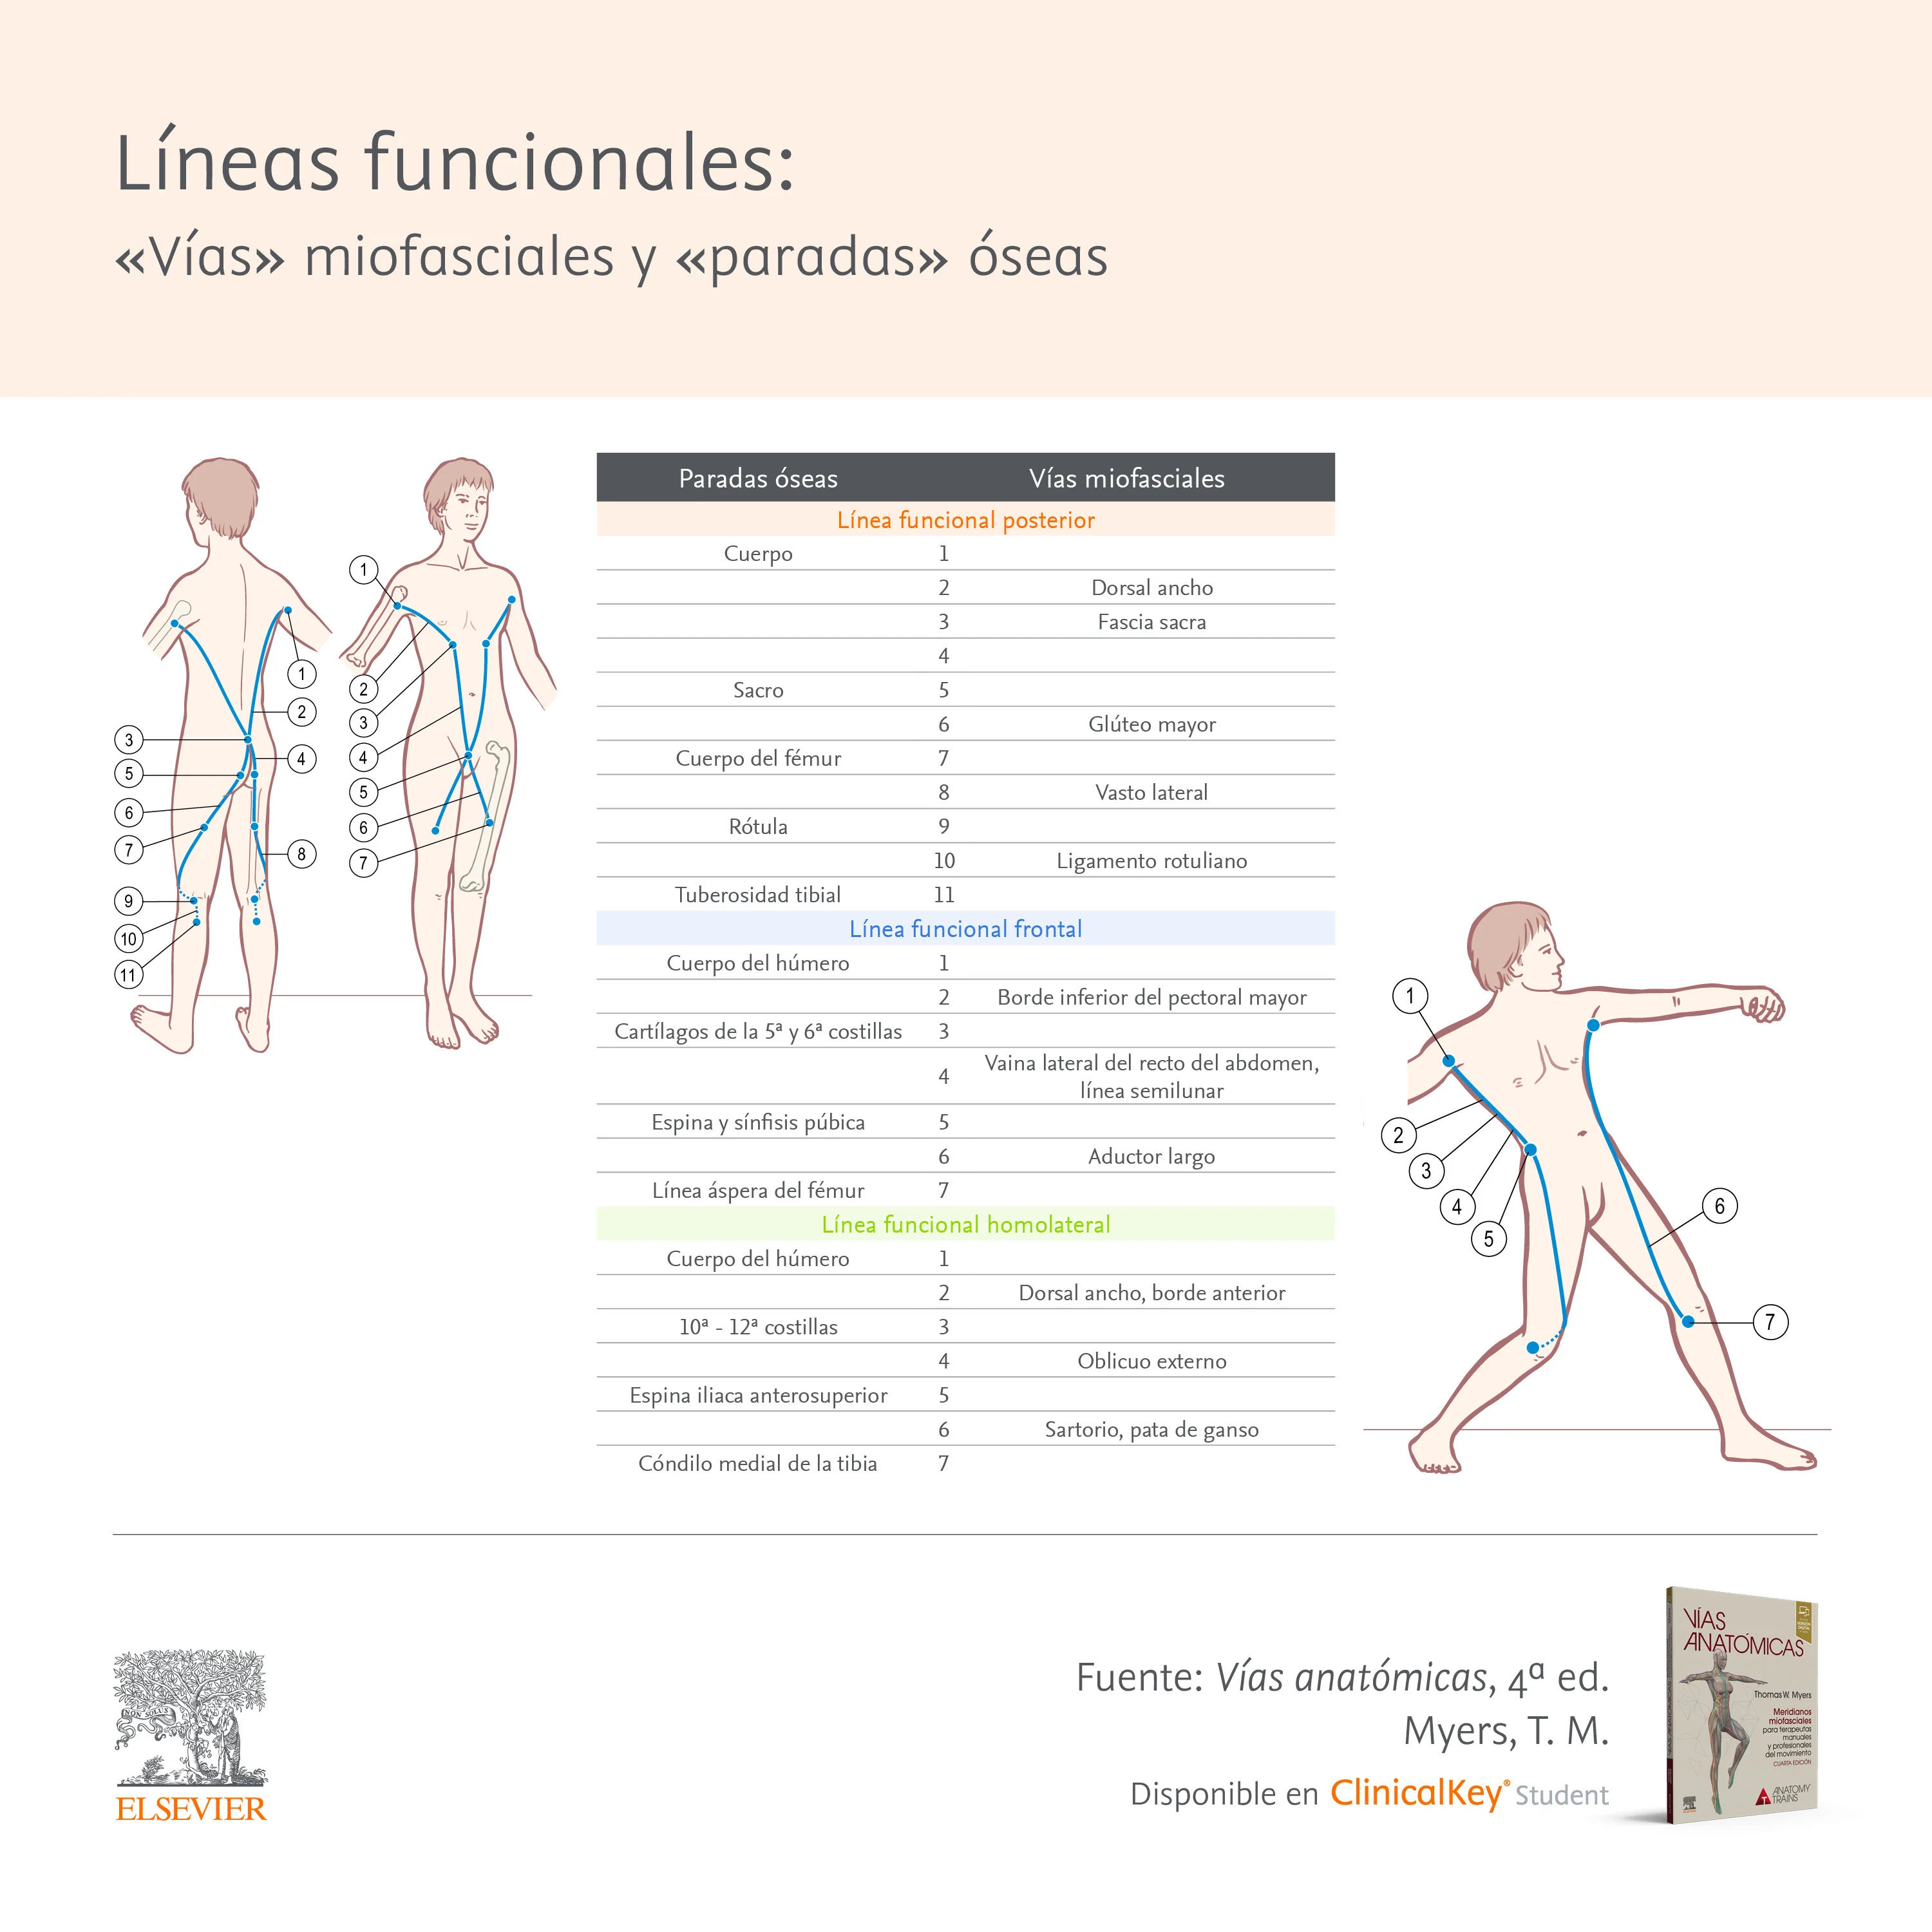 Infografia: Líneas funcionales: vías miofasciales y paradas óseas